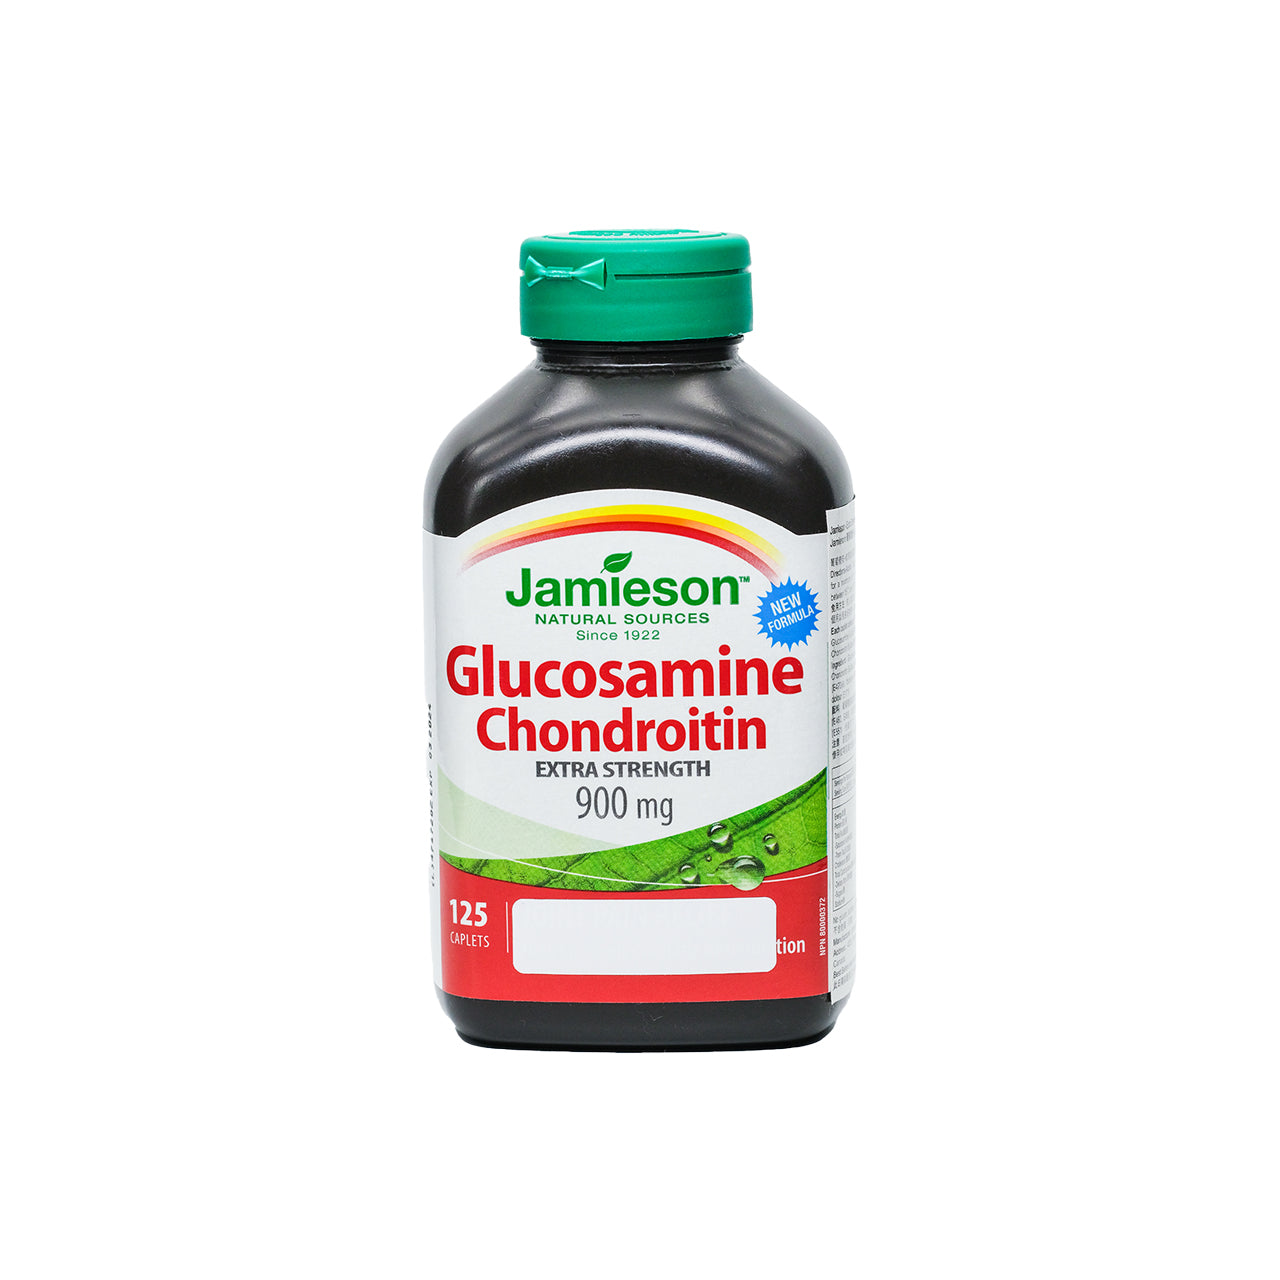 Parallel Import Jamieson Glucosamine 500mg + Chondroitin 400mg 125 Capsules | Sasa Global eShop